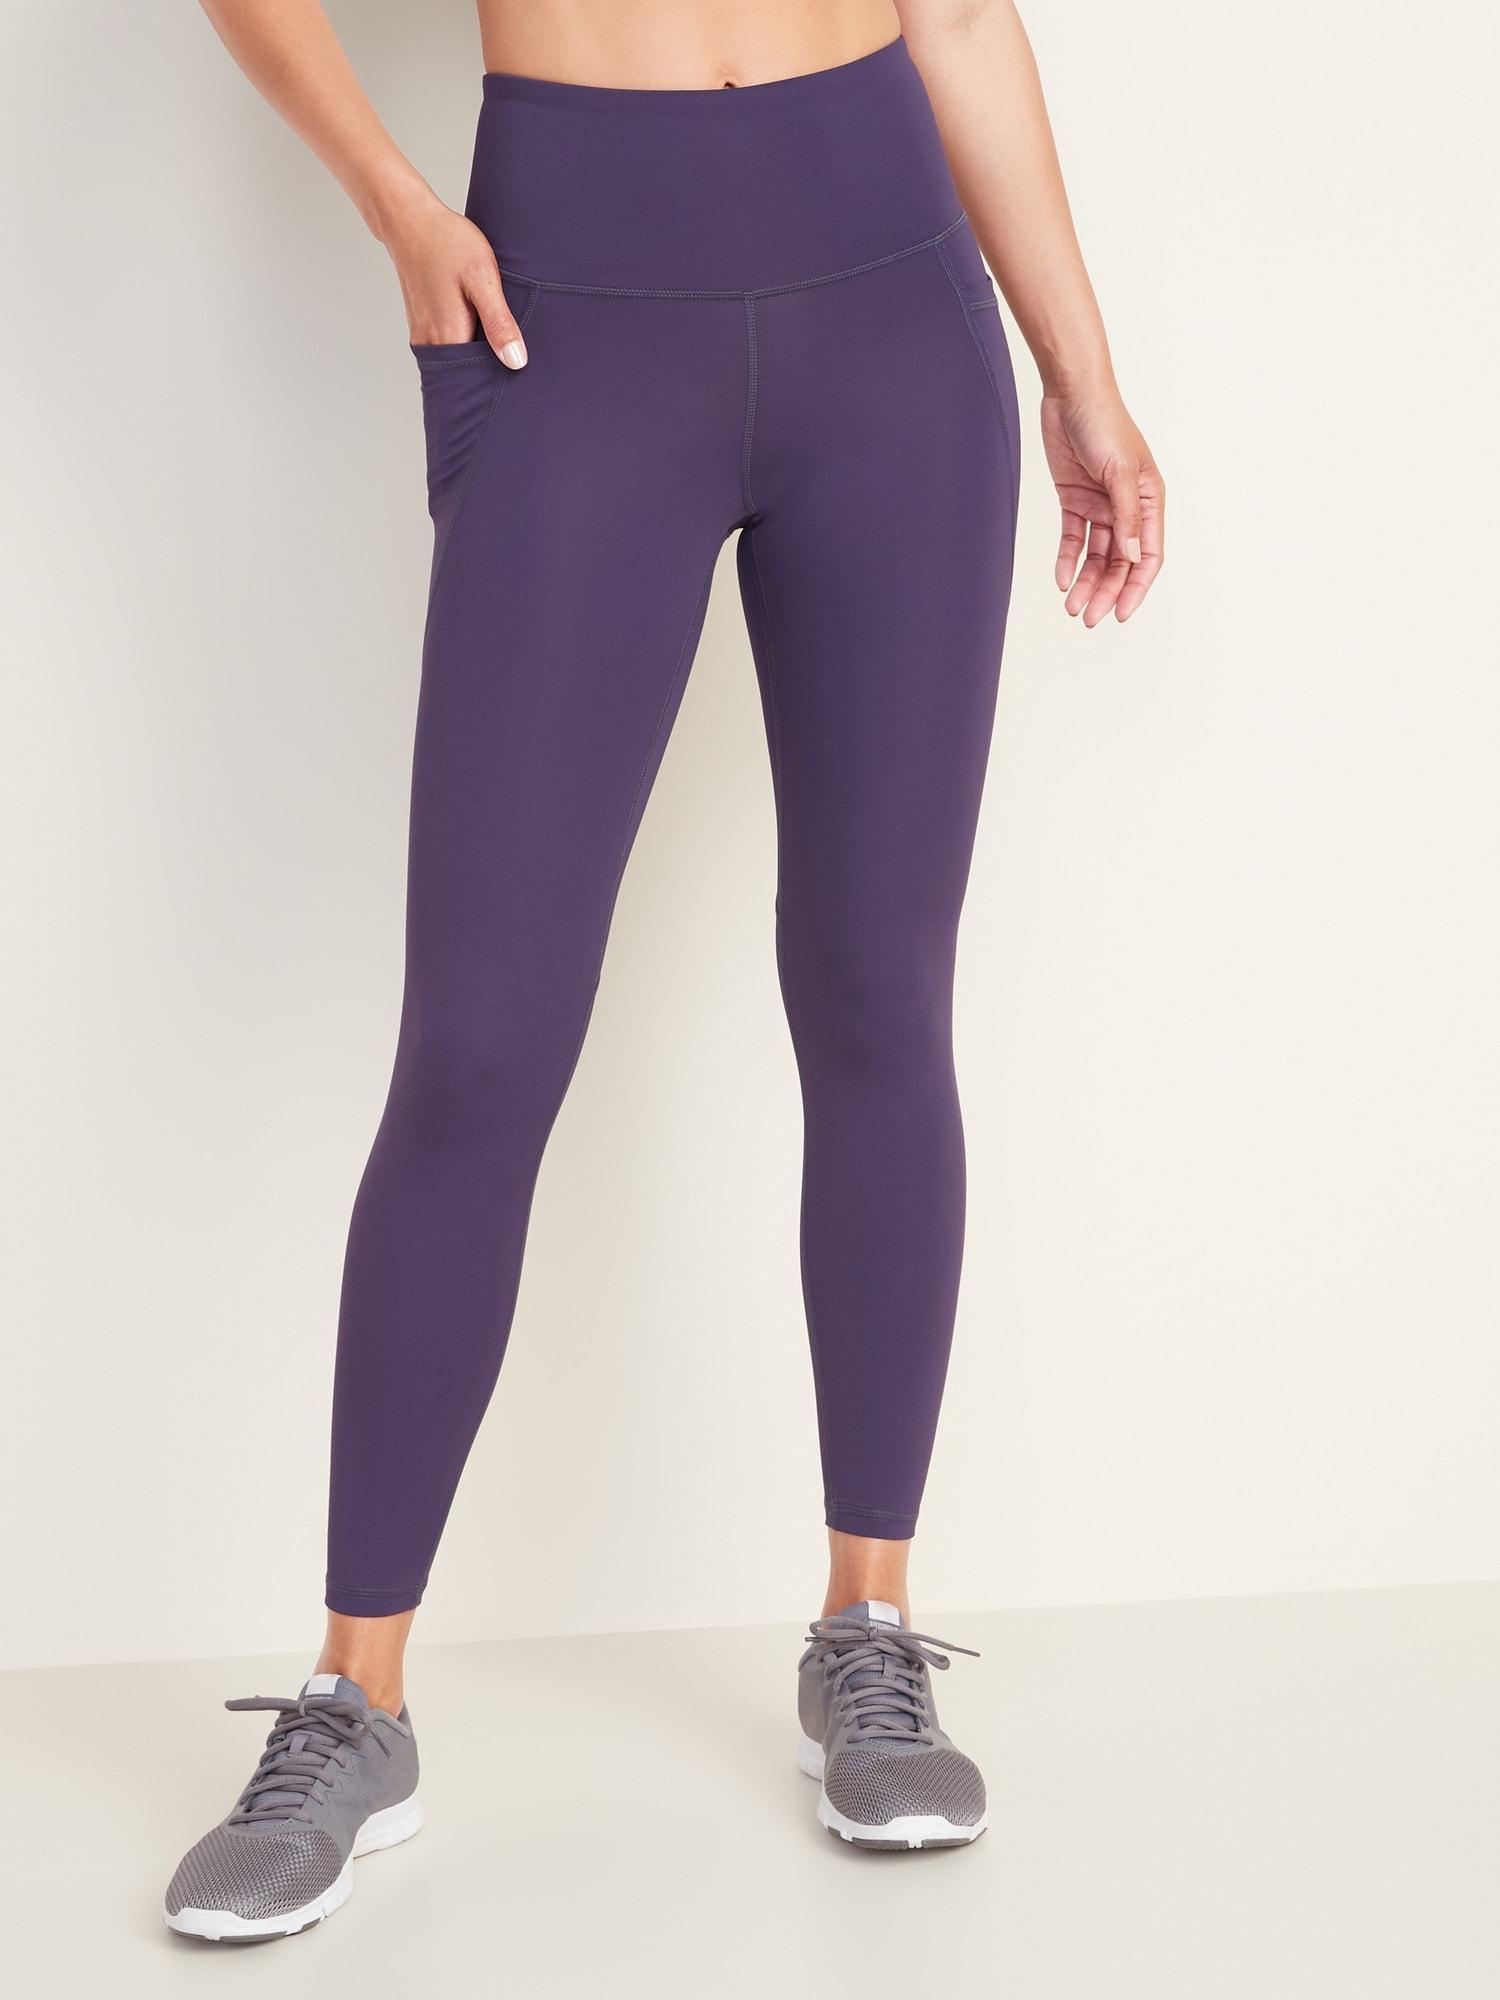 Athleta 7/8 xs leggings in solid purple, navy with - Depop